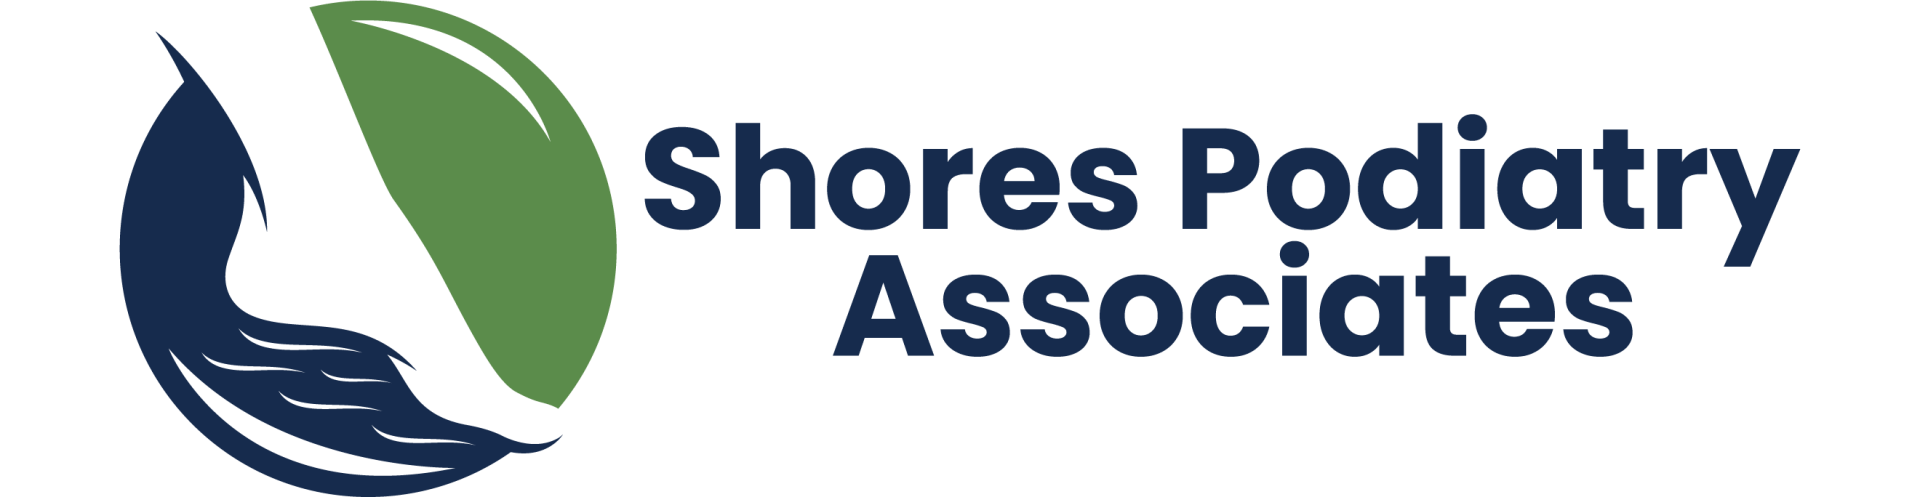 Shores Podiatry Associates